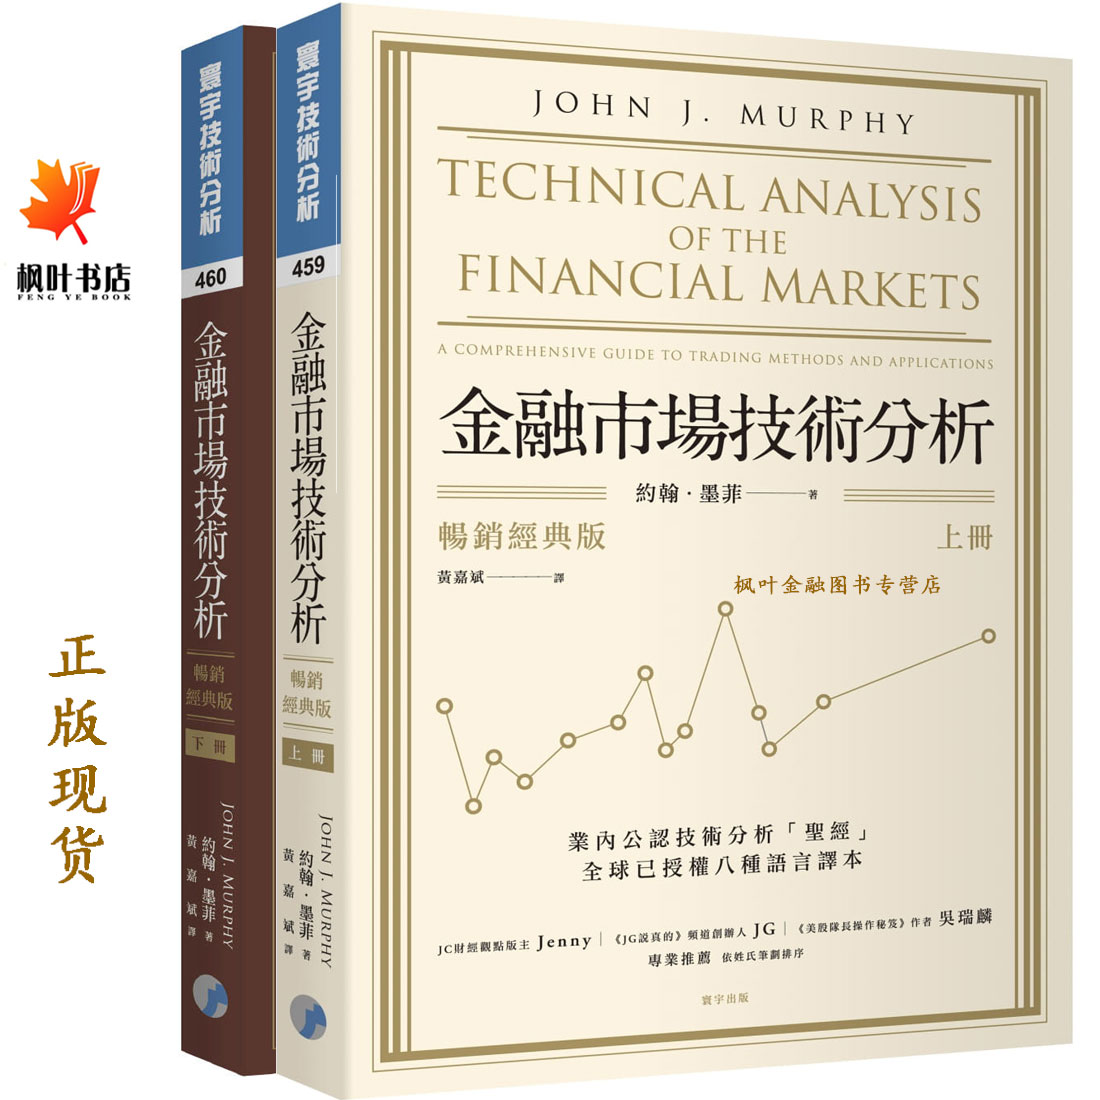 金融市場技術分析 暢銷經典版 上下共2册 約翰墨菲John J. Murphy 黃嘉斌譯 台湾寰宇